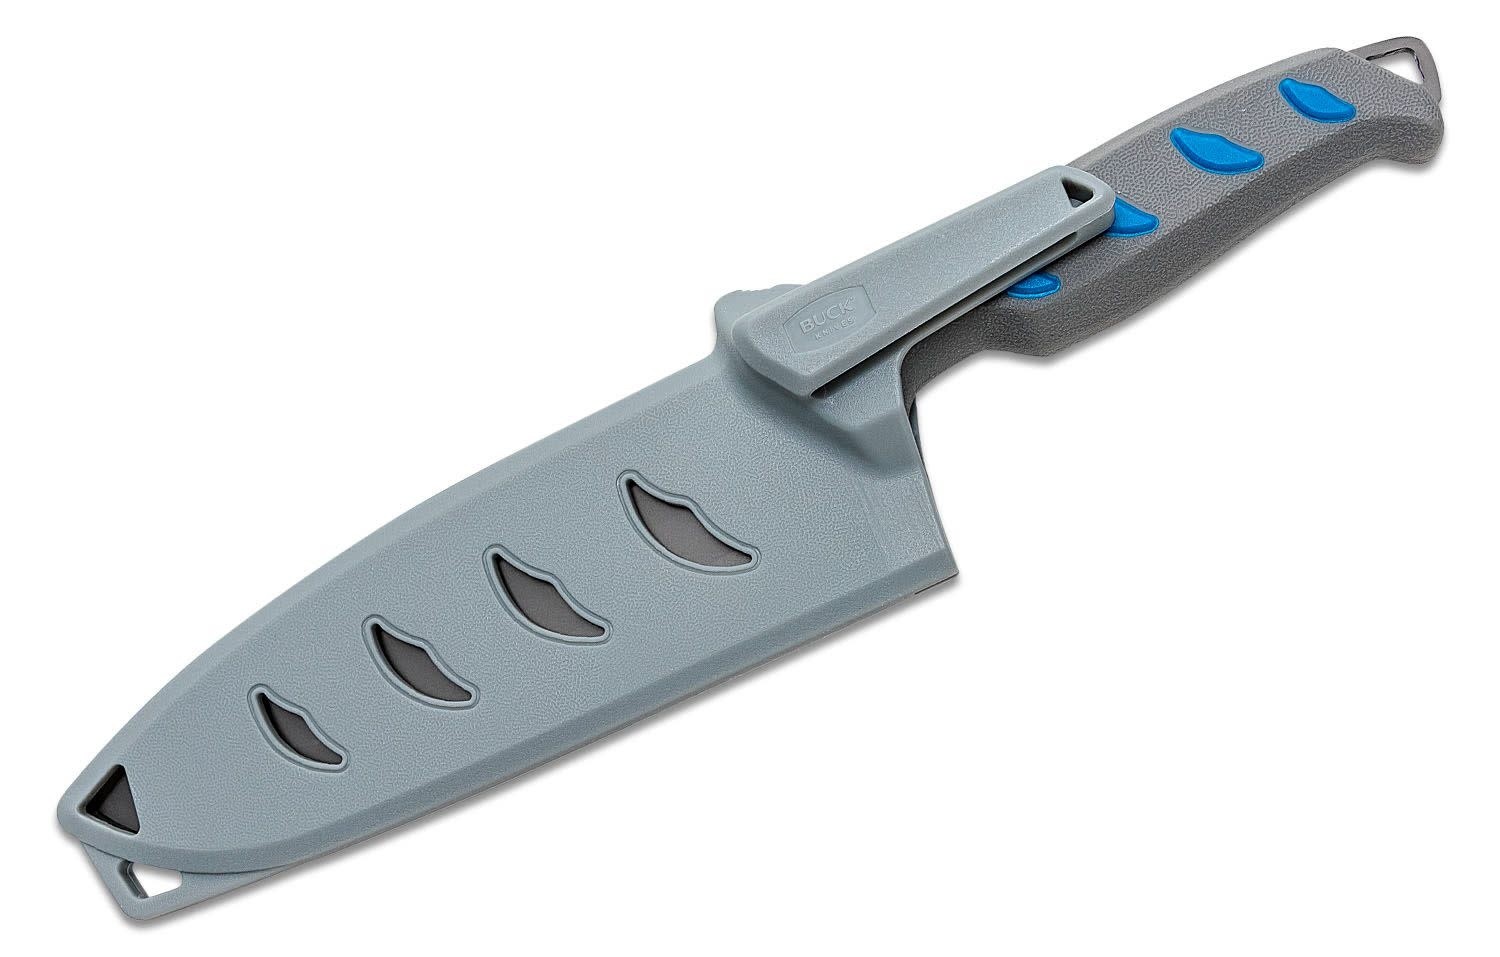 Buck Hookset 6 Cleaver Salt Water Knife Blue/Gray - Outdoor Essentials